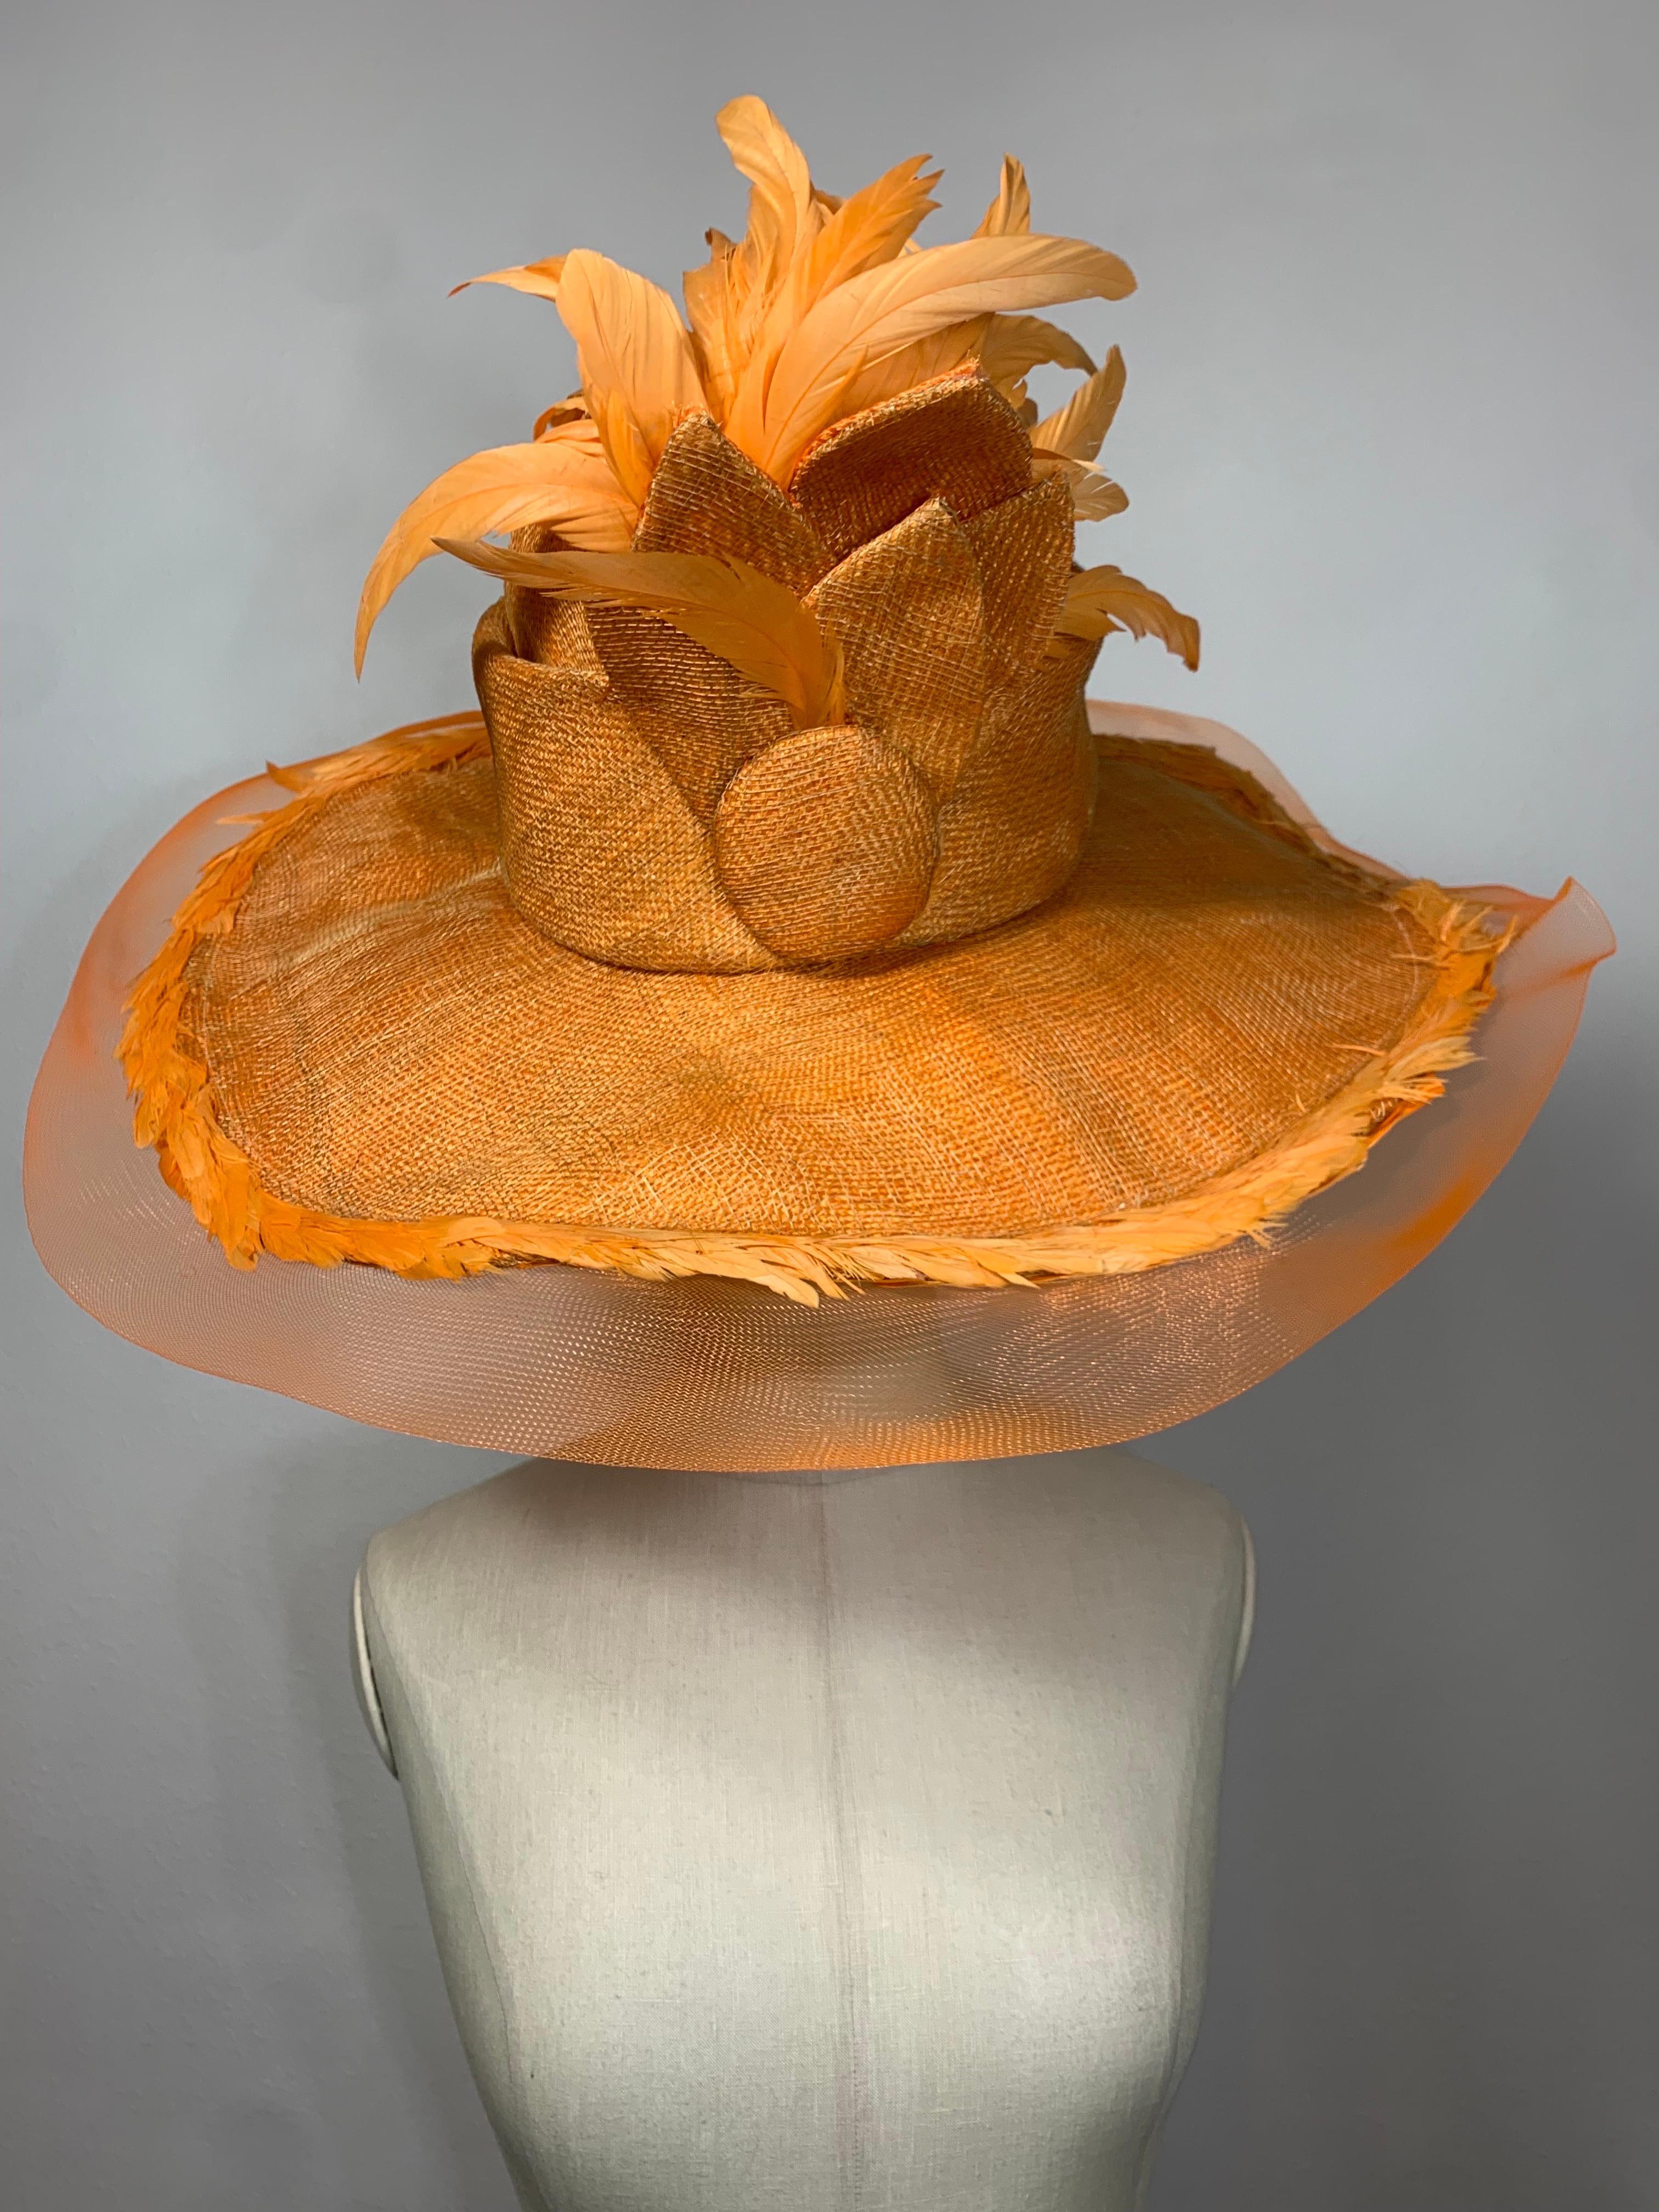 Susan van der Linde Chapeau de paille orange à larges bords avec bord en crin de cheval et plumes à la couronne :  La haute couronne arrondie est bordée d'une rosette de feuilles de paille et de belles plumes de coque de couleur crème orange. Le